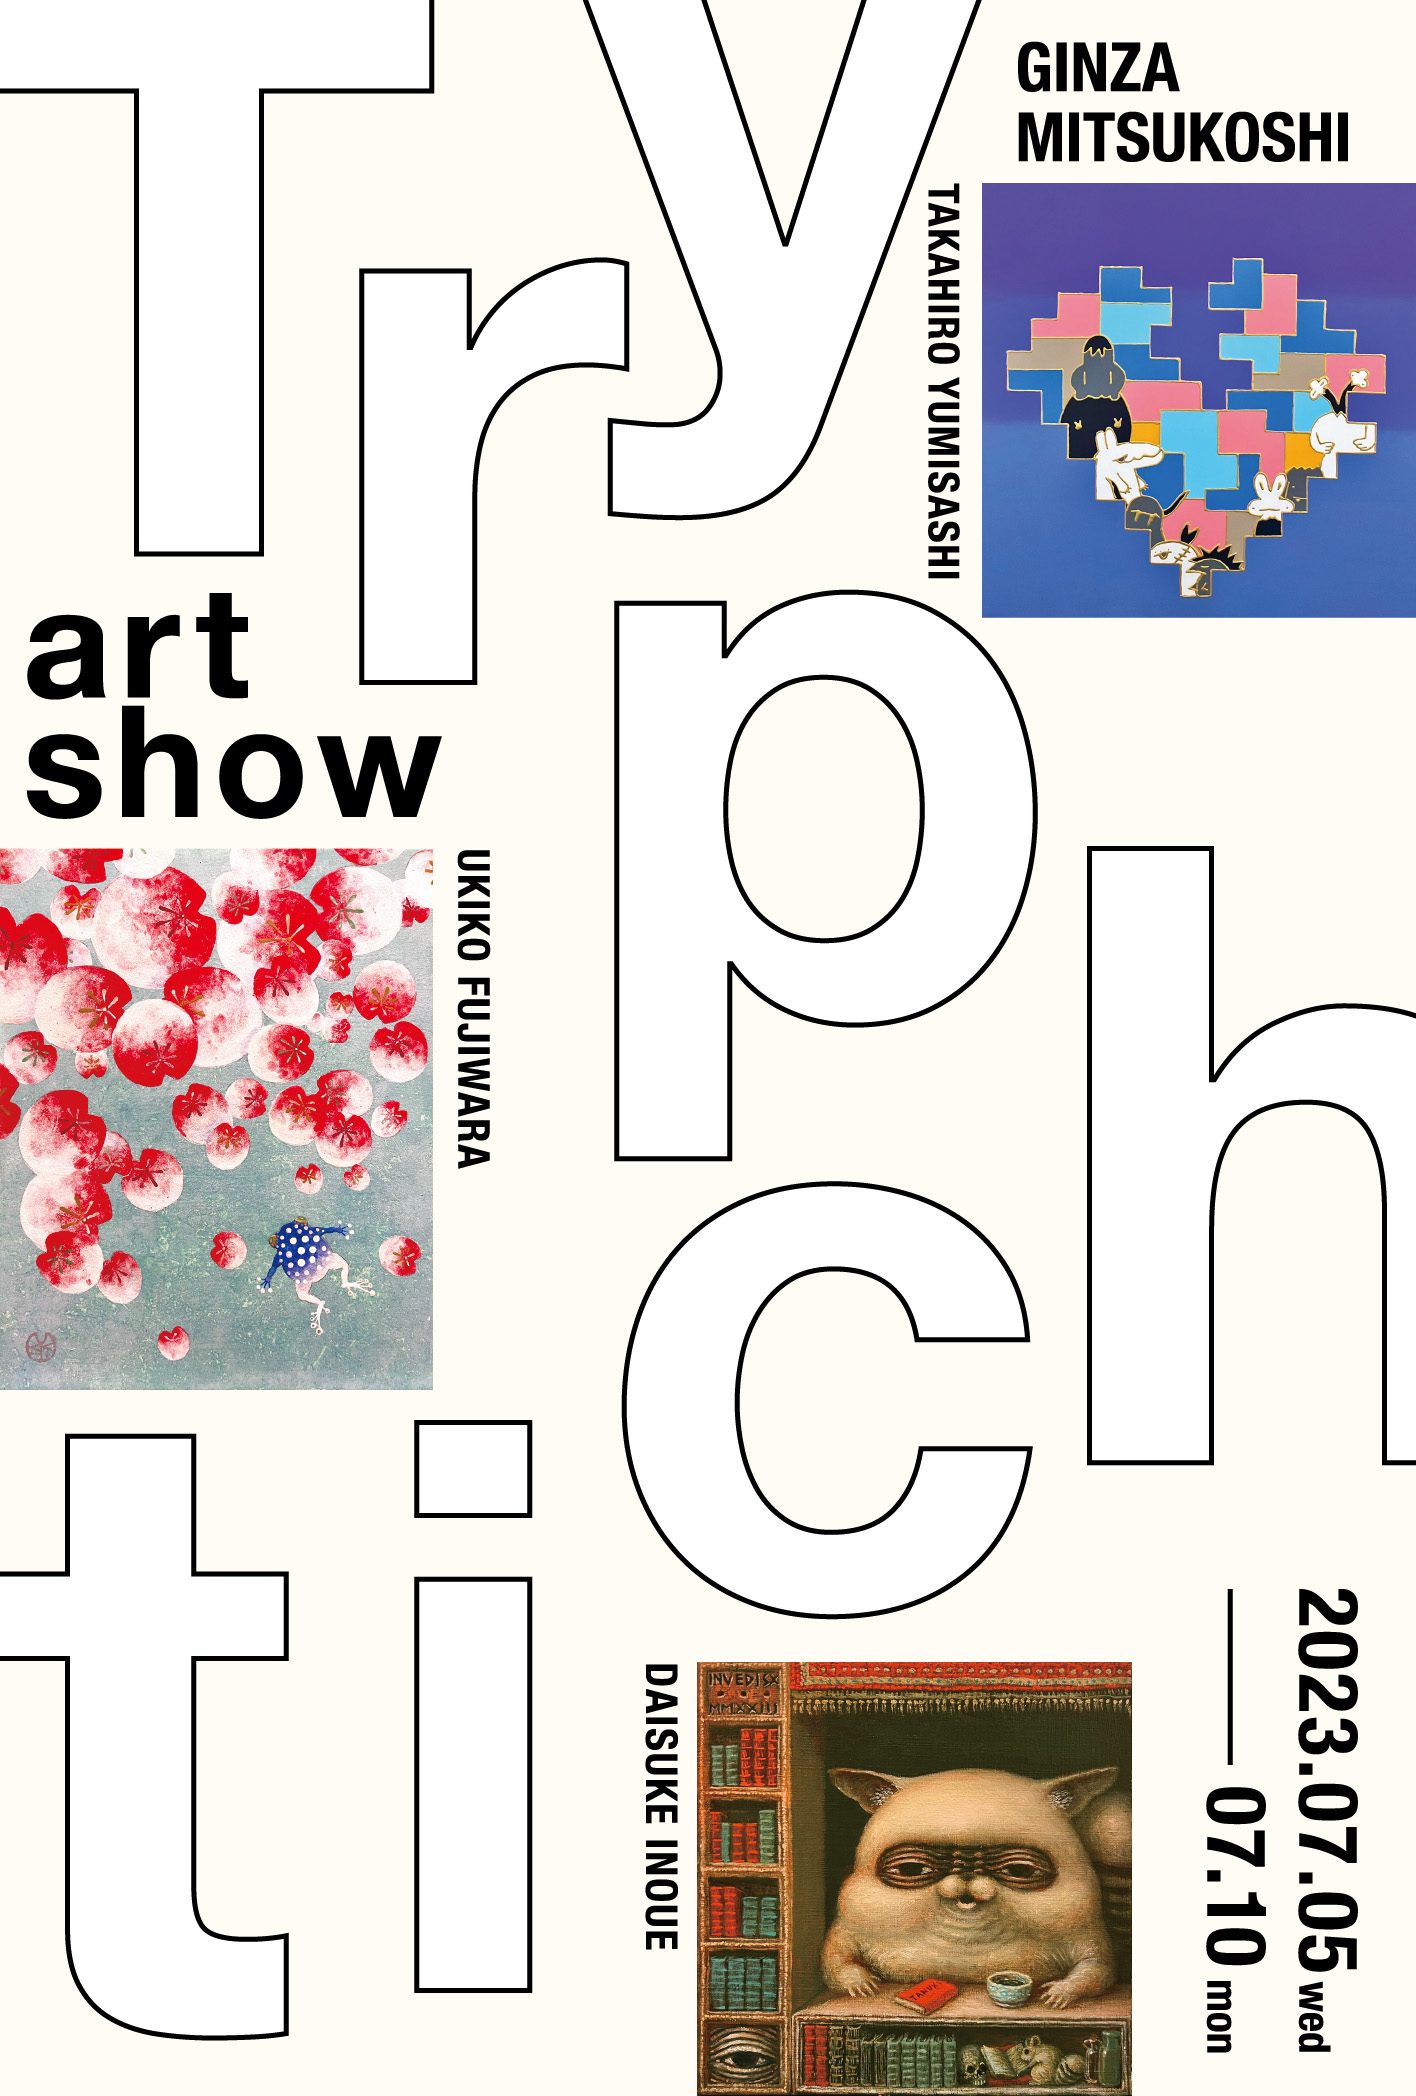 銀座三越にて開催のアートの展覧会「Tryptich(トリプティク)」のポスター